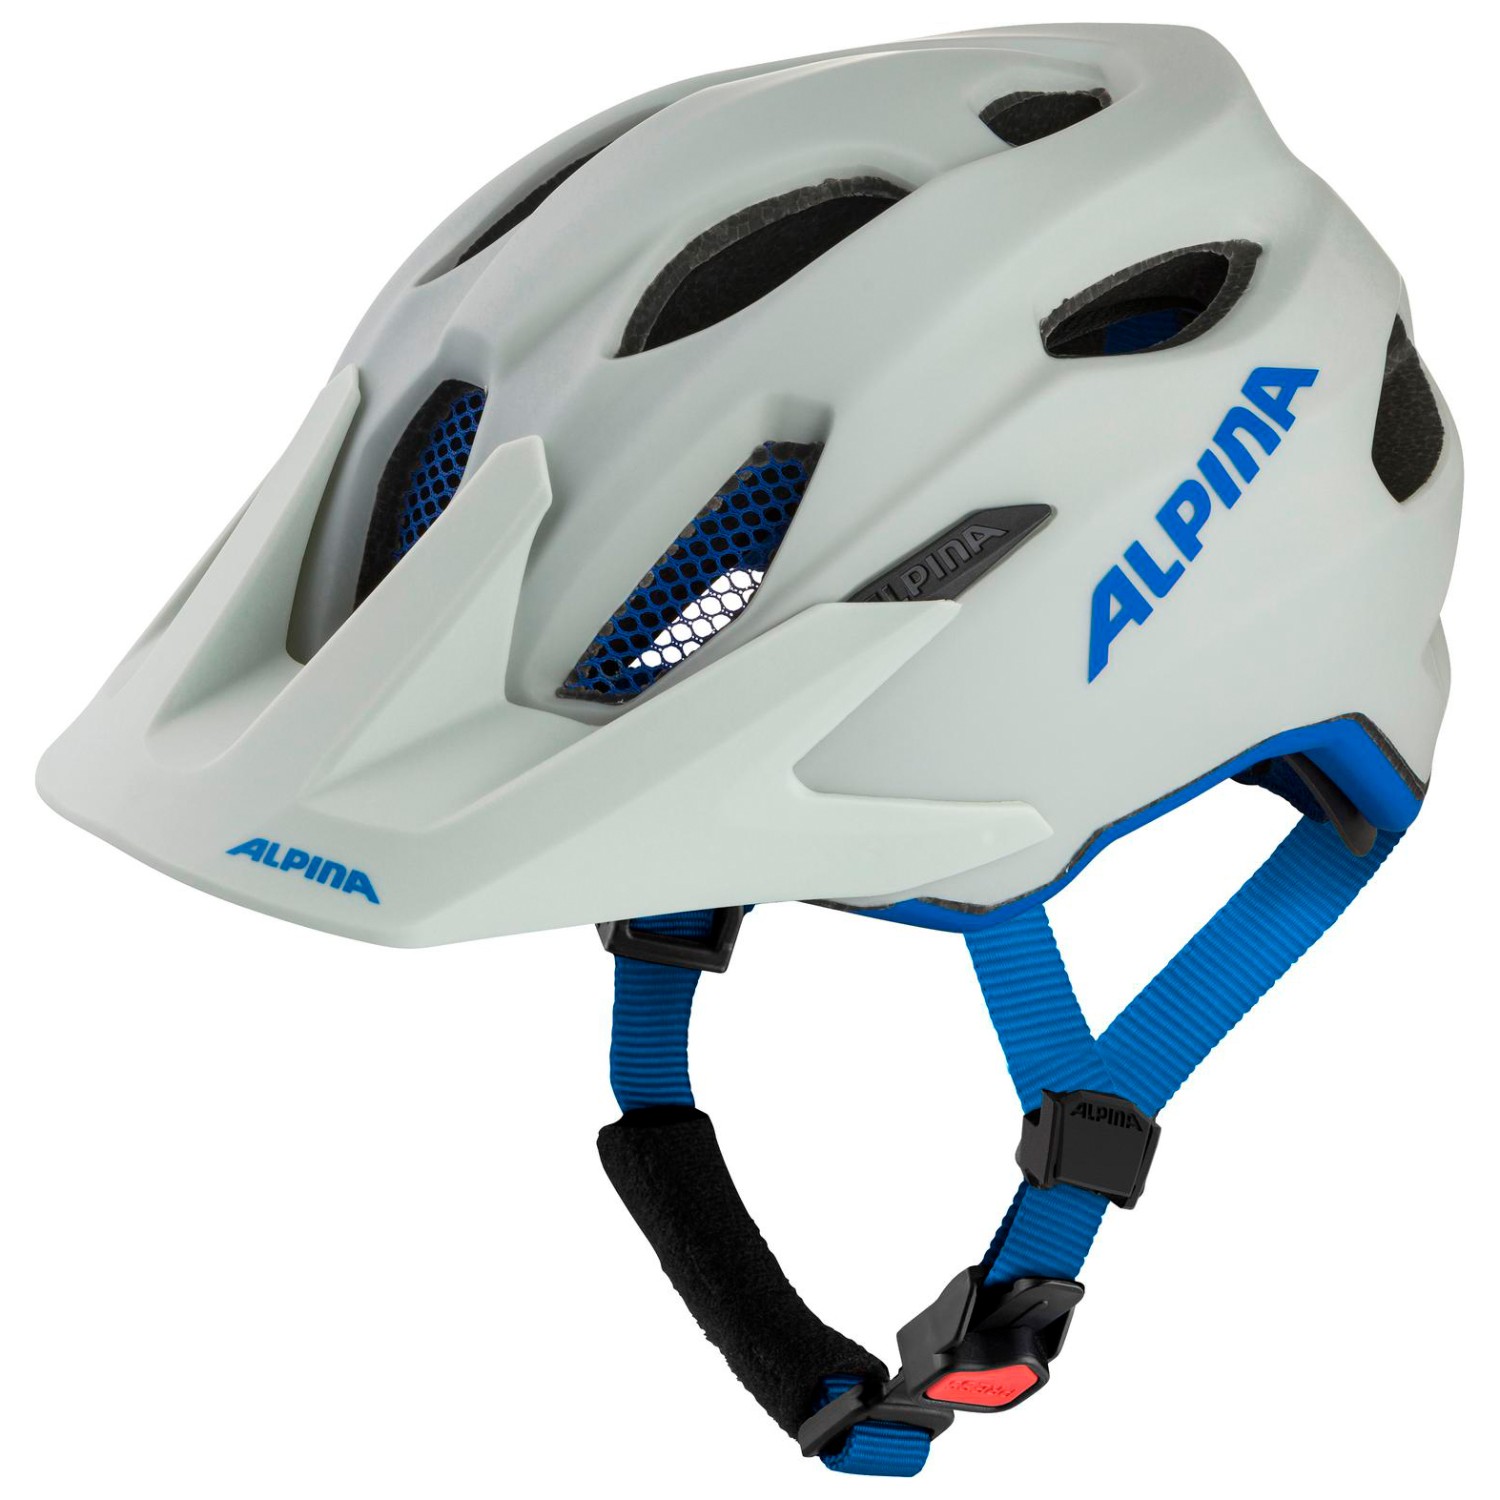 Велосипедный шлем Alpina Carapax Junior, цвет Smoke/Grey Blue Matt шлем защитный alpina carapax 2 0 52 dove blue grey